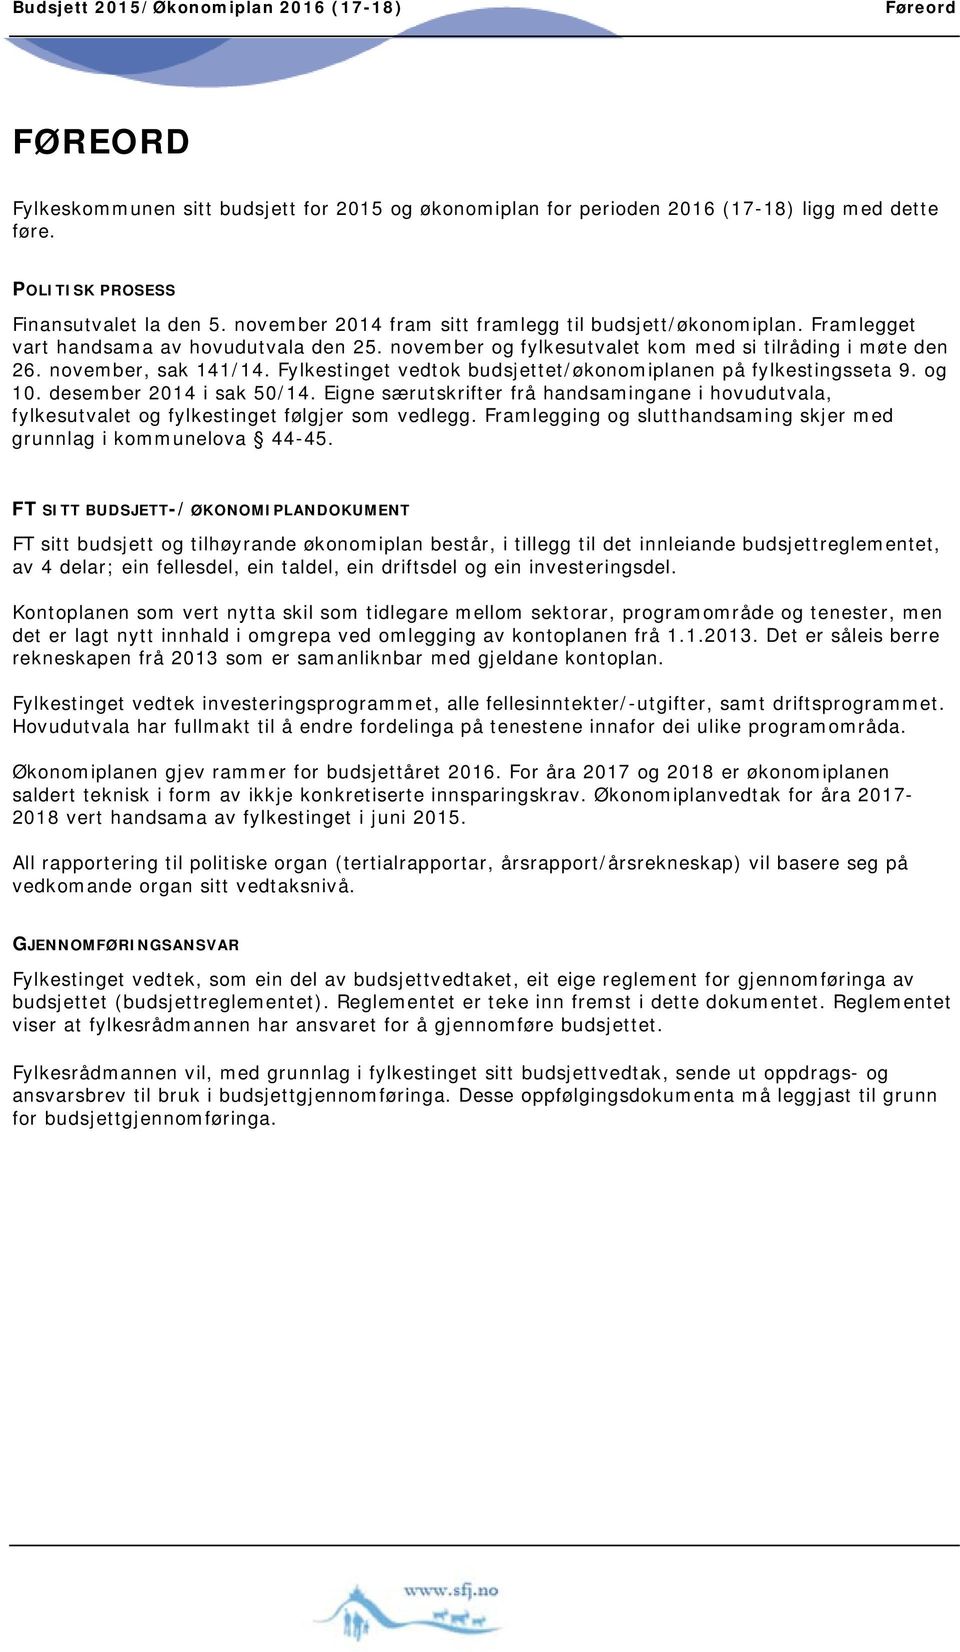 Fylkestinget vedtok budsjettet/økonomiplanen på fylkestingsseta 9. og 10. desember 2014 i sak 50/14.